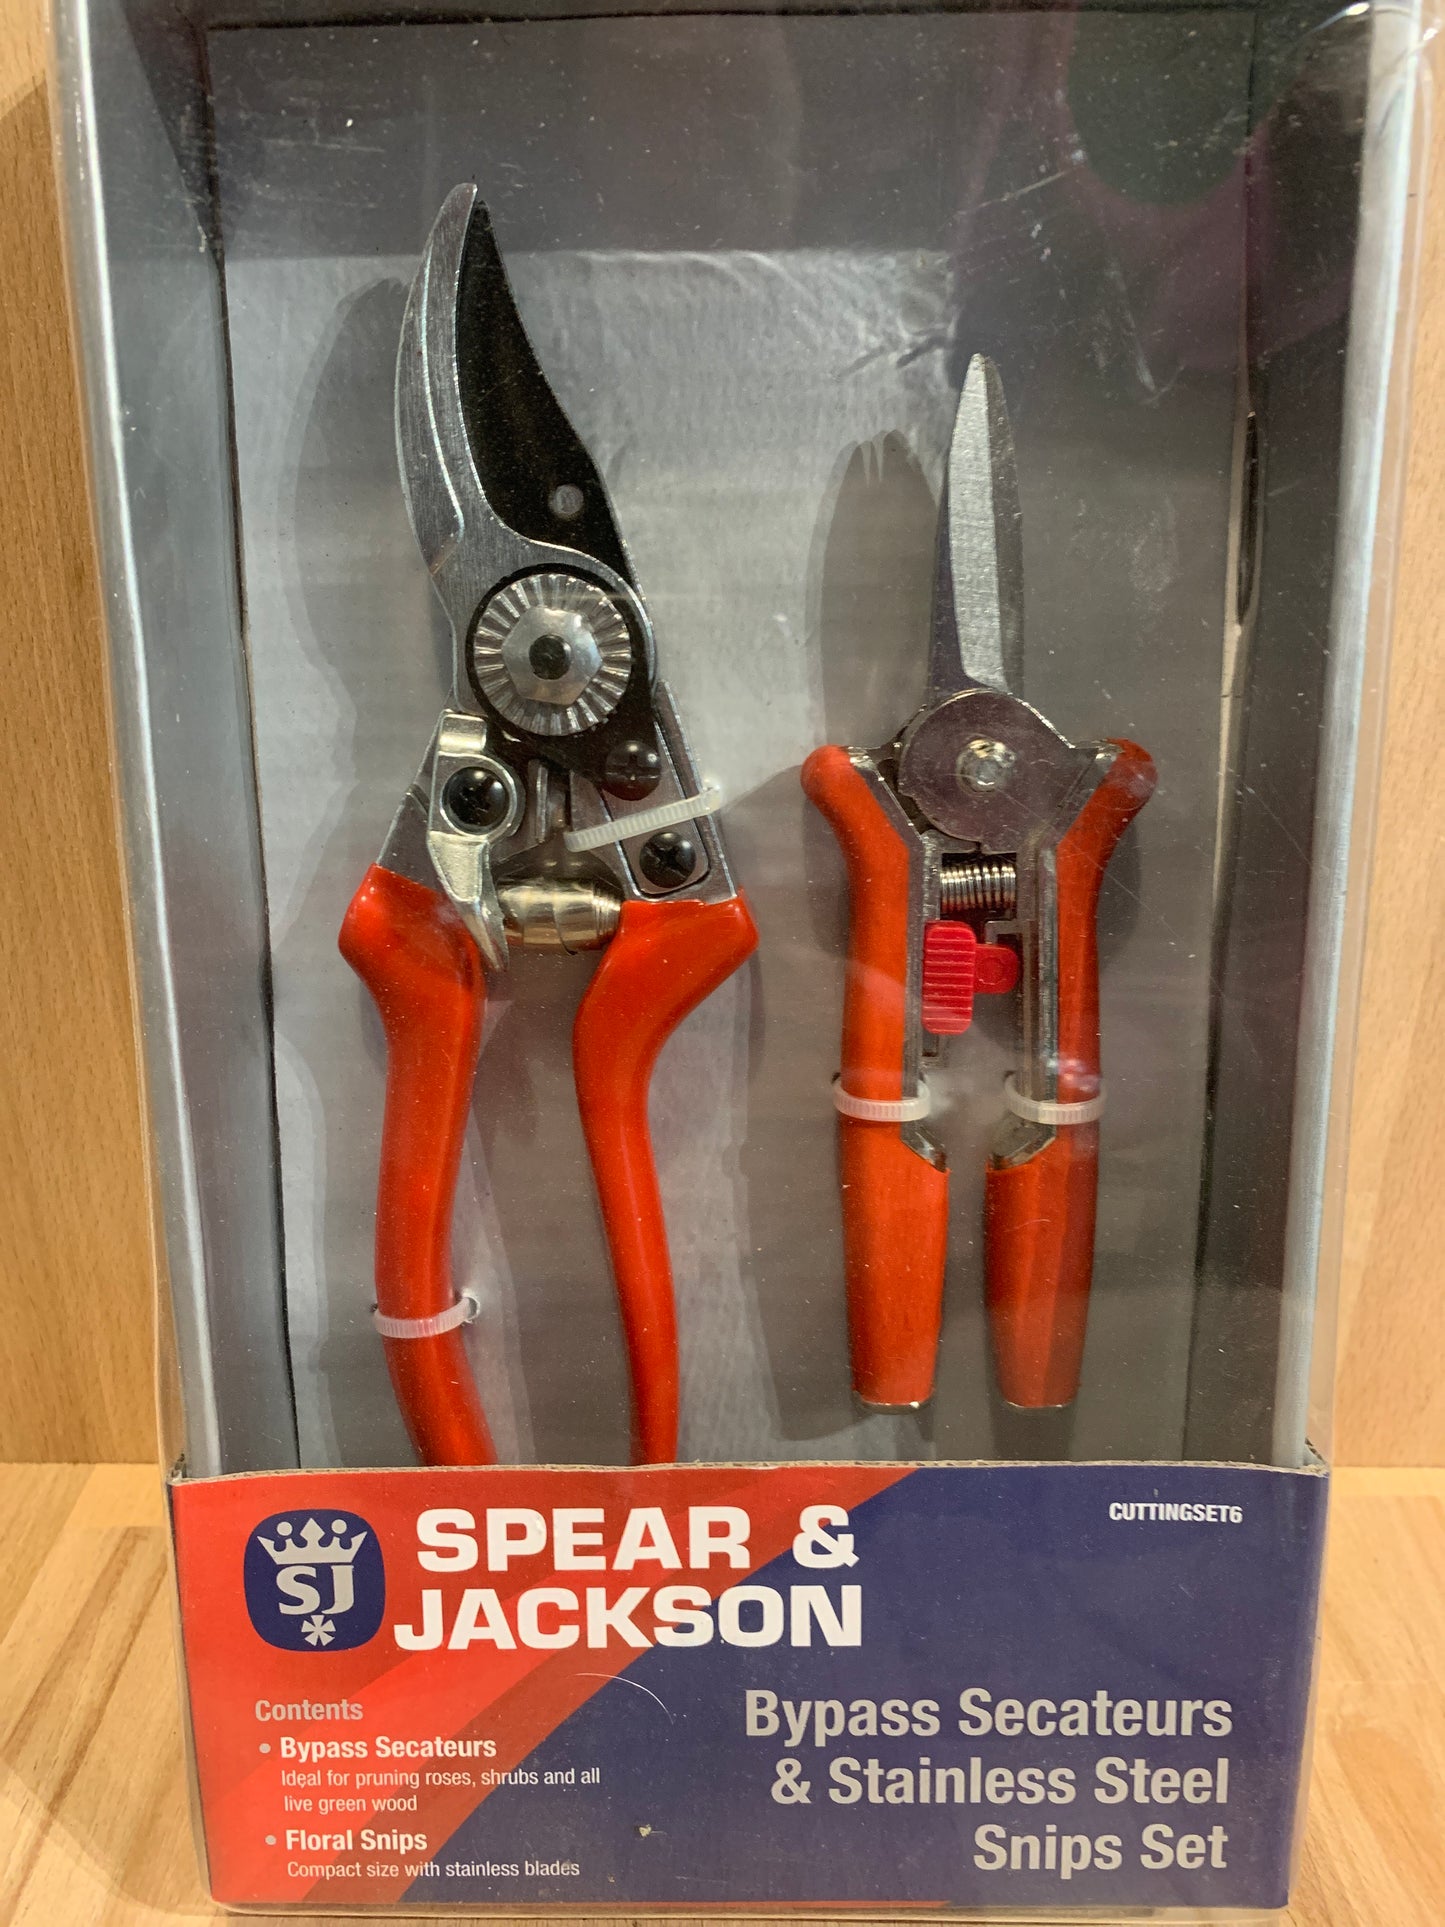 Spear & Jackson Tool Sets